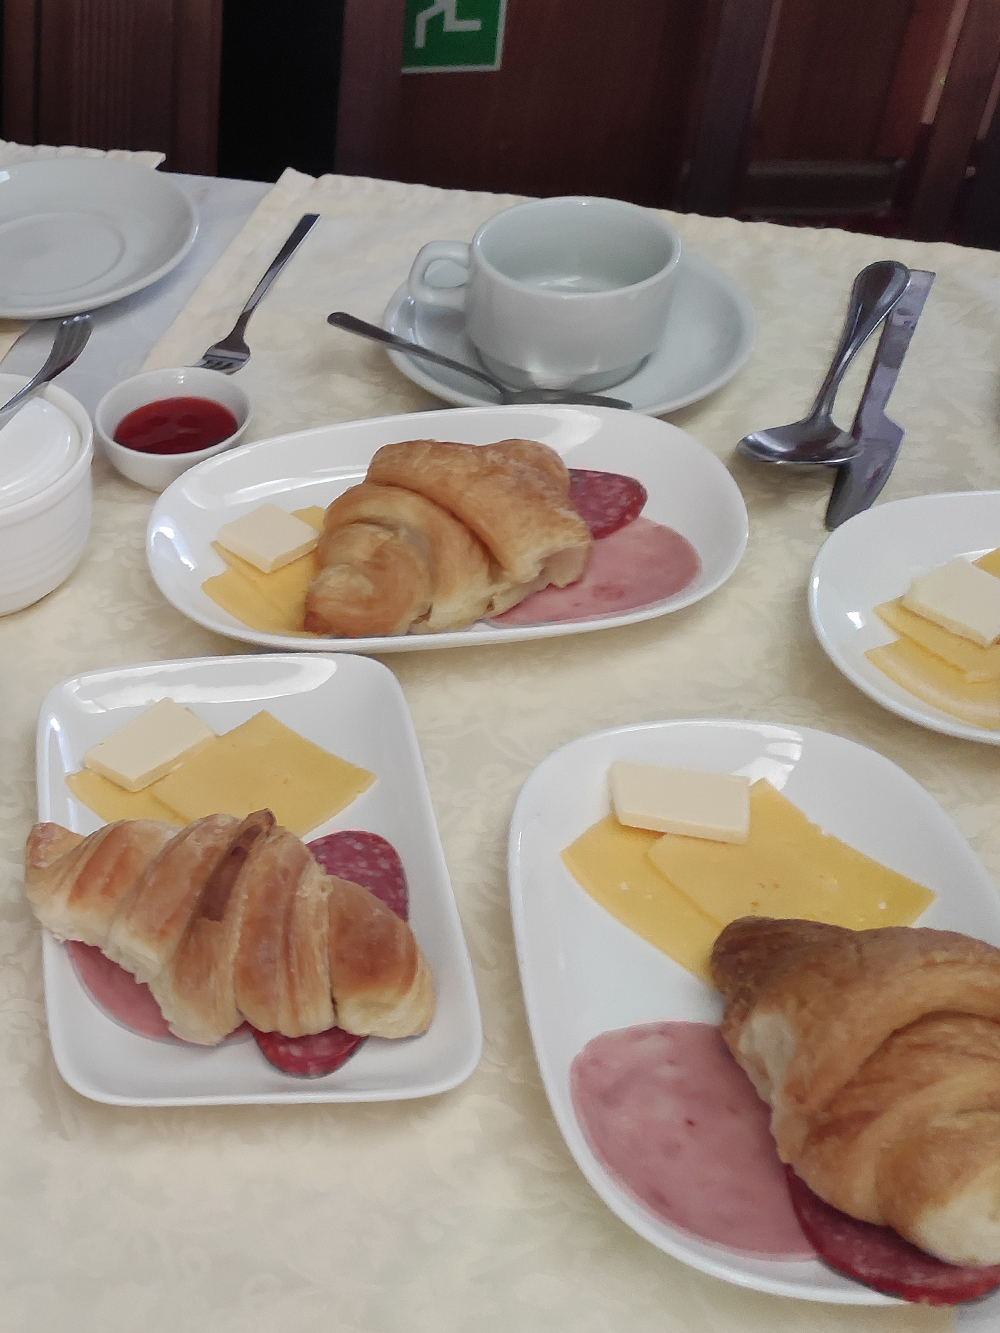 Круассаны, ветчину и сыр подавали каждое утро вместе с основным завтраком, состав которого менялся